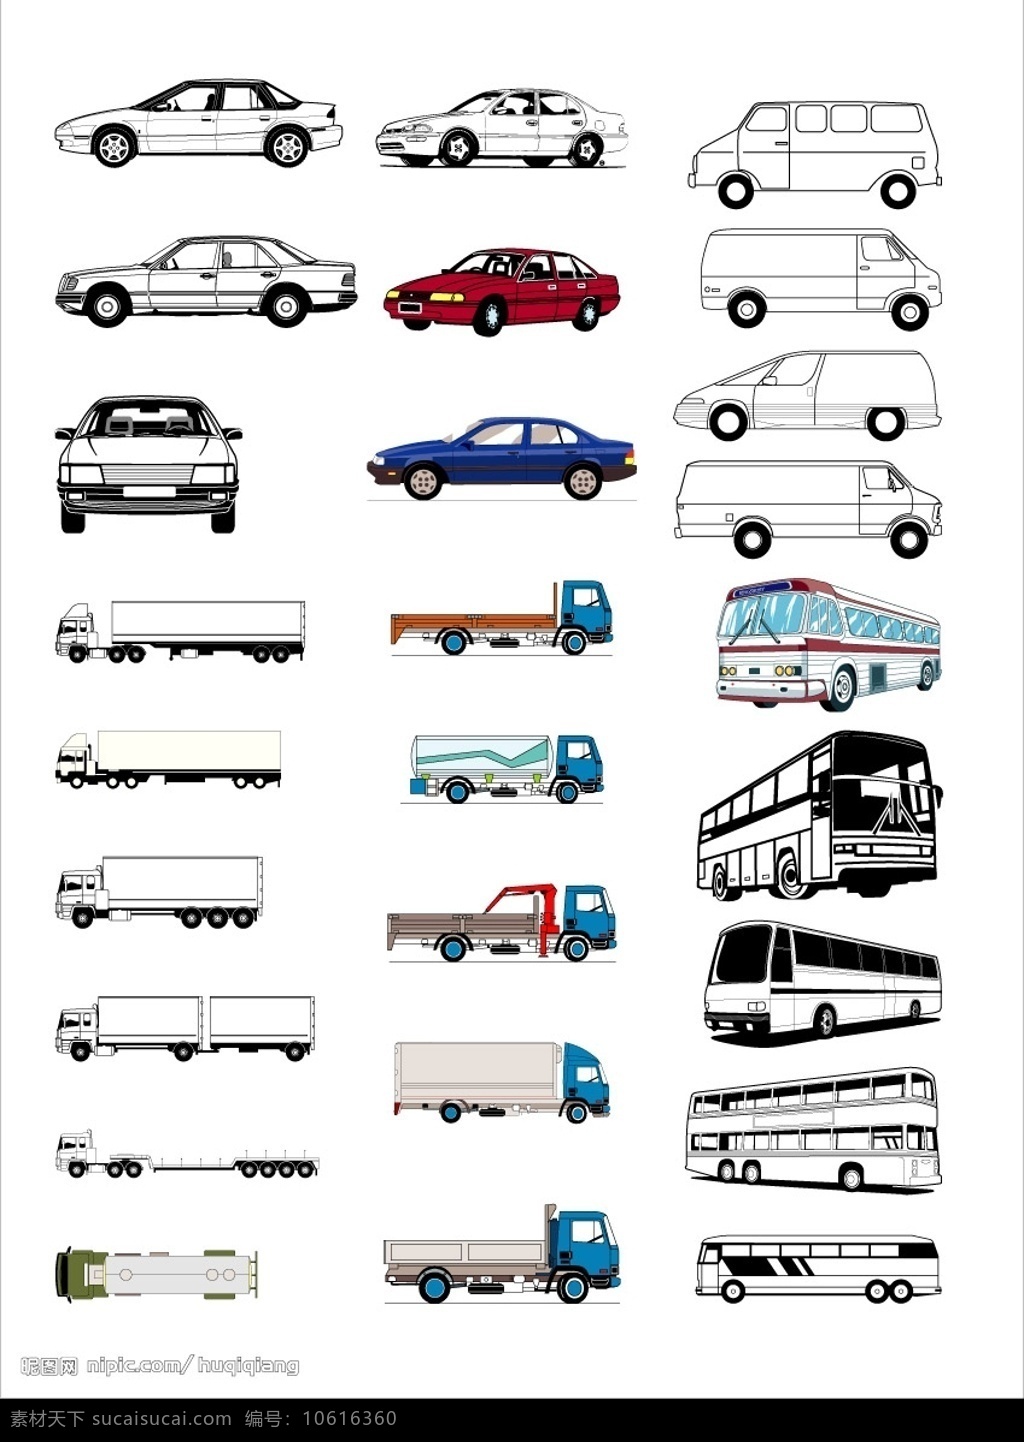 汽车模型 汽车 模型 矢量 卡车 轿车 现代科技 交通工具 矢量图库